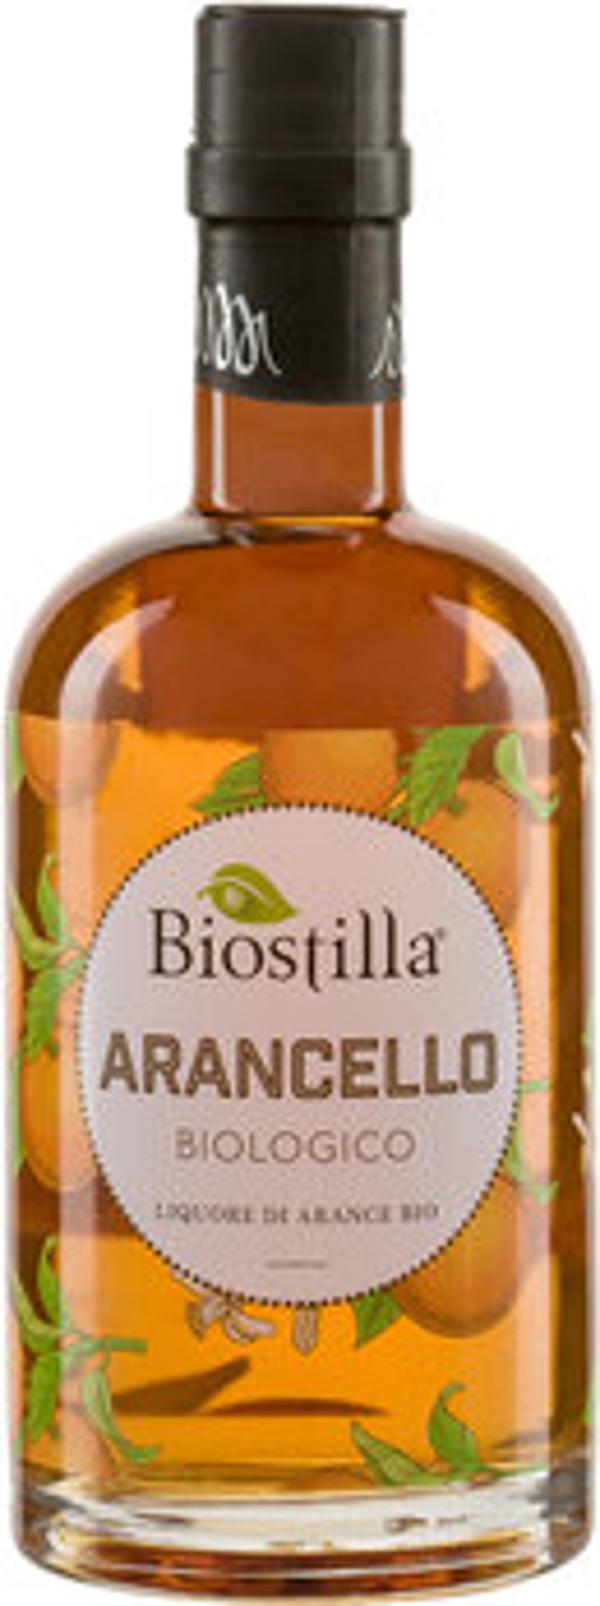 Produktfoto zu Biostilla Arancello 50cl